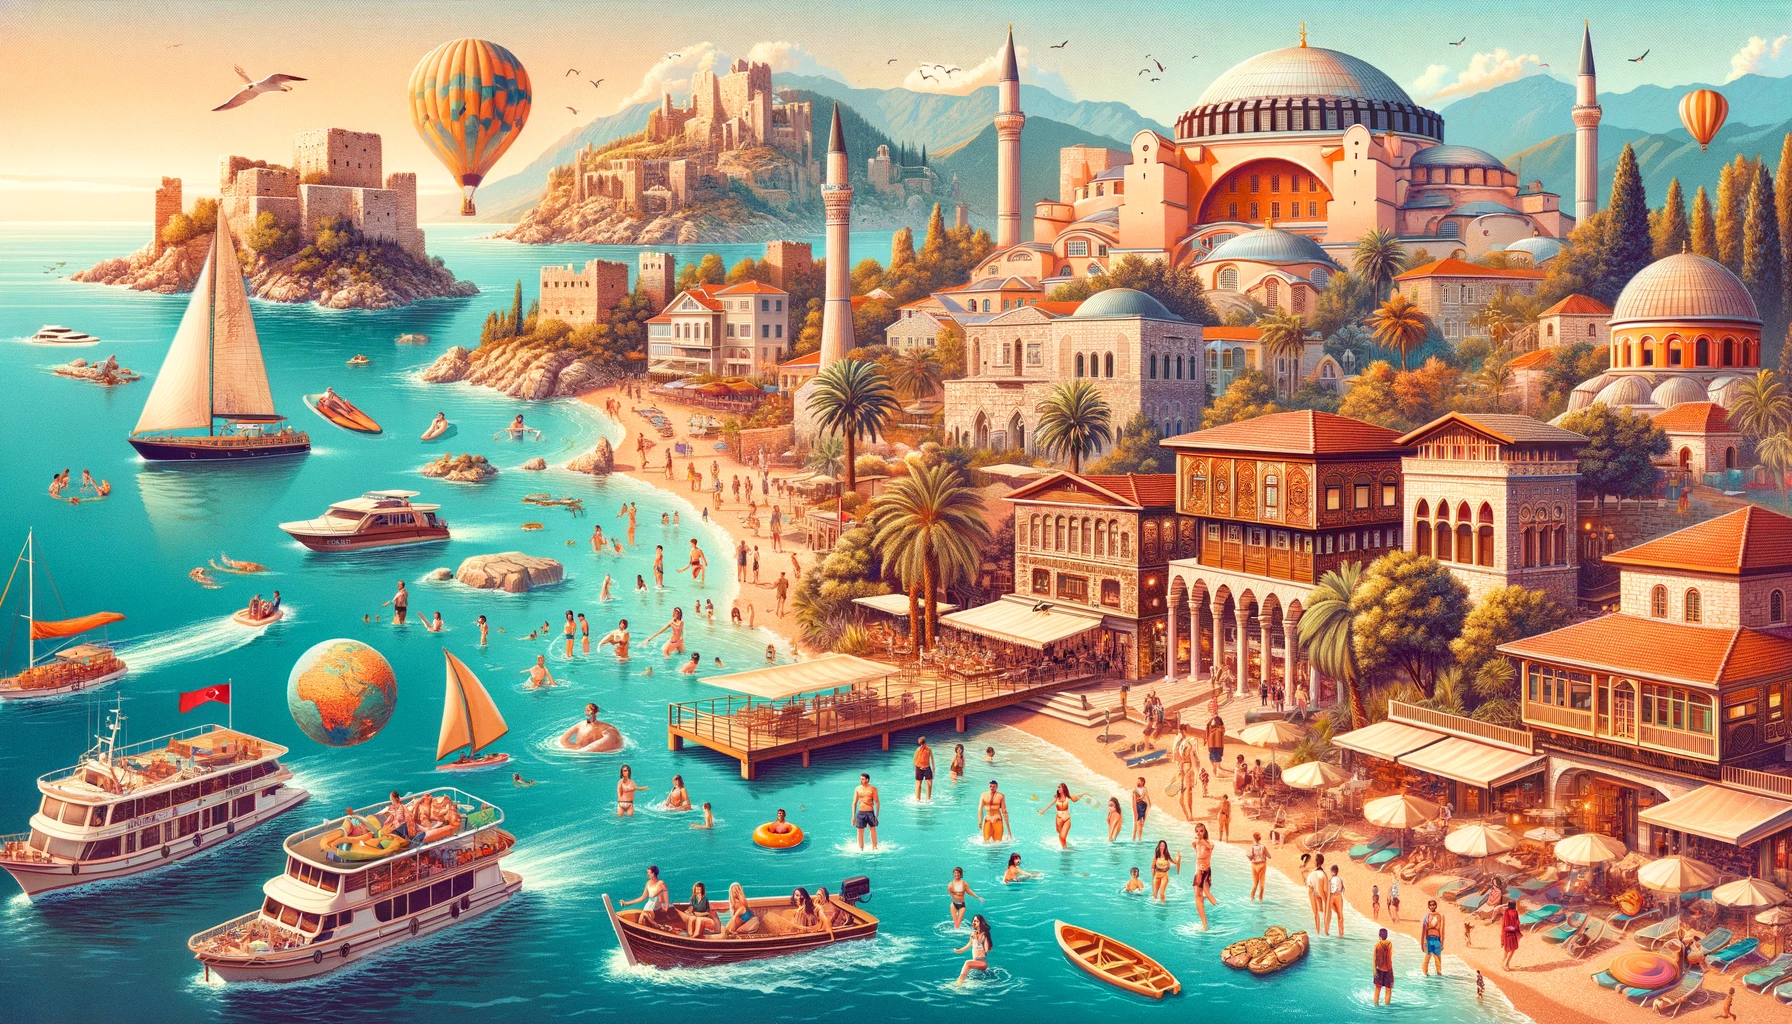 Изображение, отражающее красоту курортов Турции, на котором изображены чистые пляжи, бирюзовое море, исторические развалины и  туристы, наслаждающиеся отдыхом.